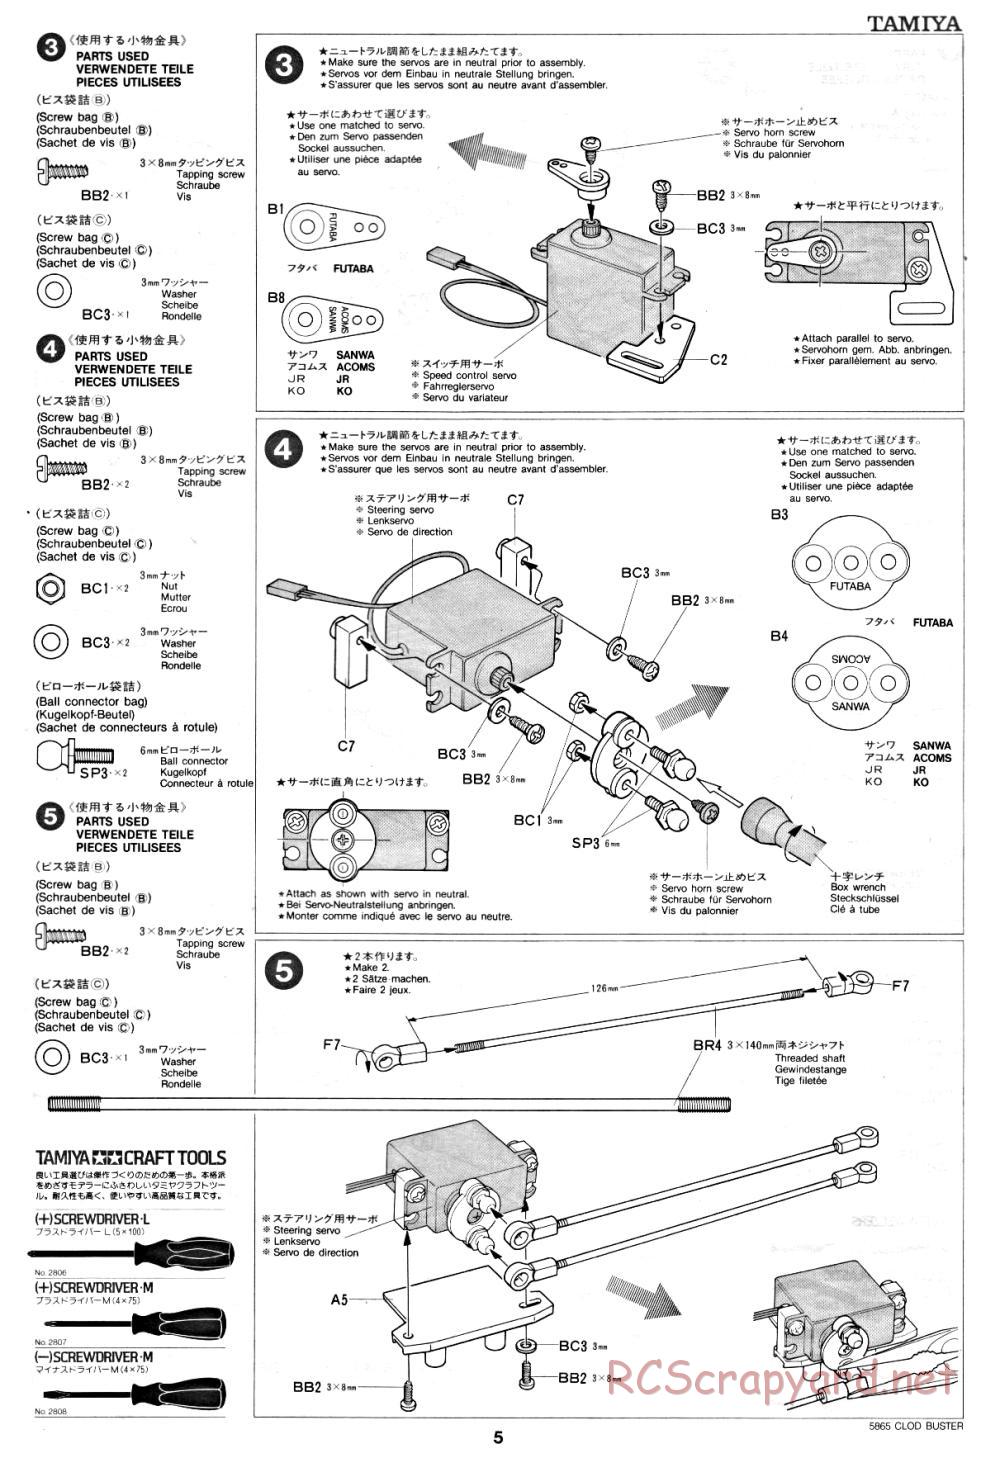 Tamiya - Clod Buster - 58065 - Manual - Page 5